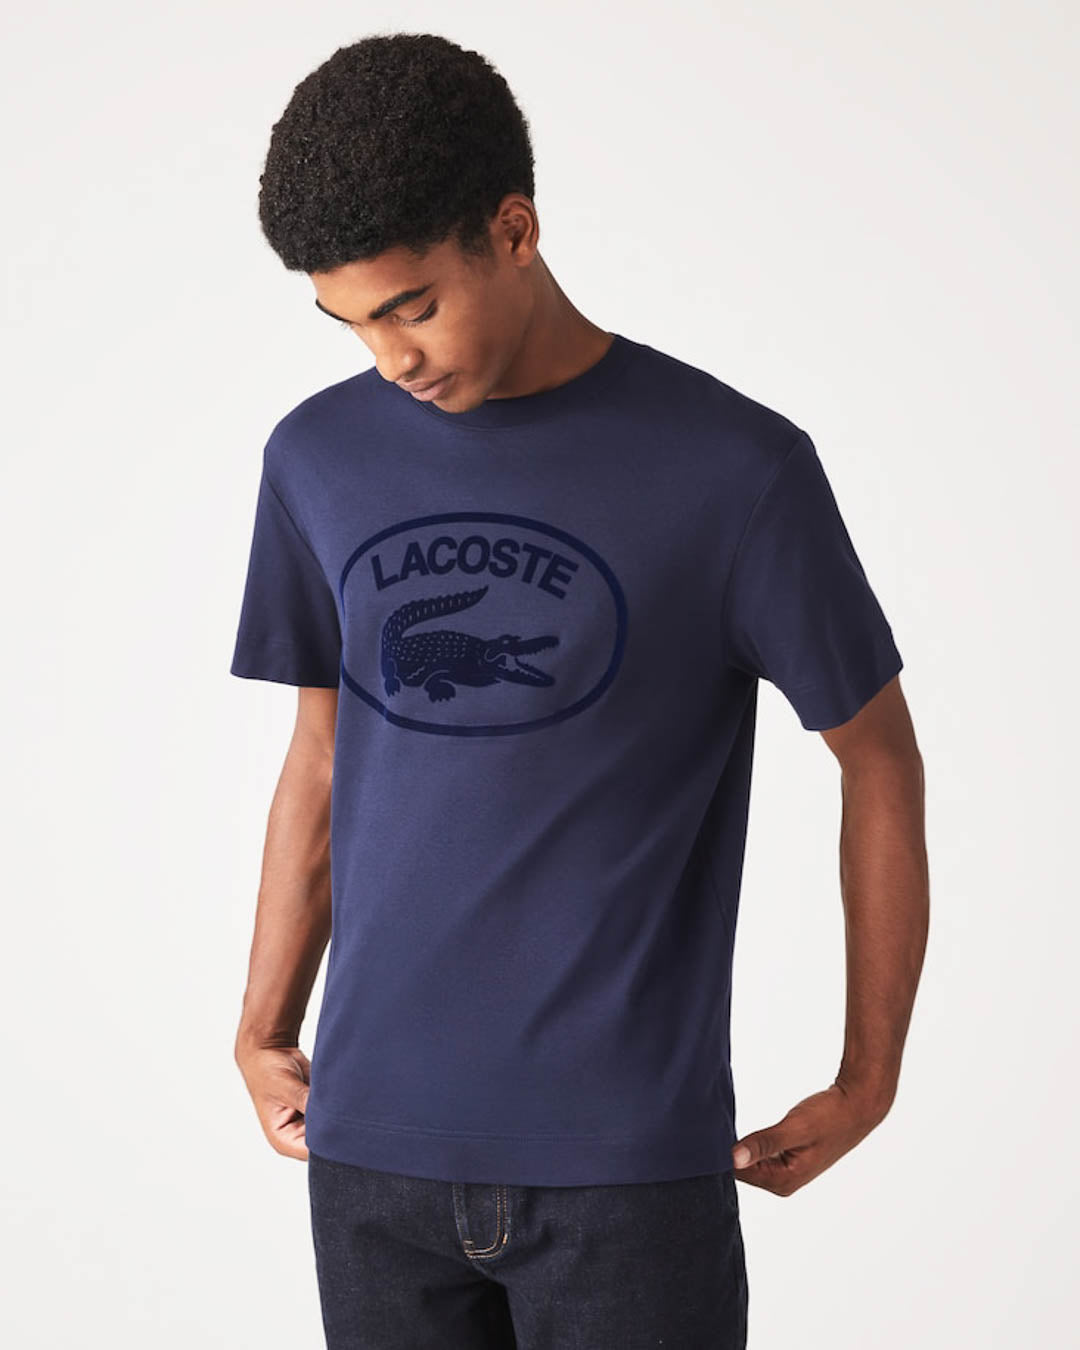 Udled Almindelig Ideel Lacoste Herre Relaxed Fit tone-i-tone mærket bomuld T-shirt